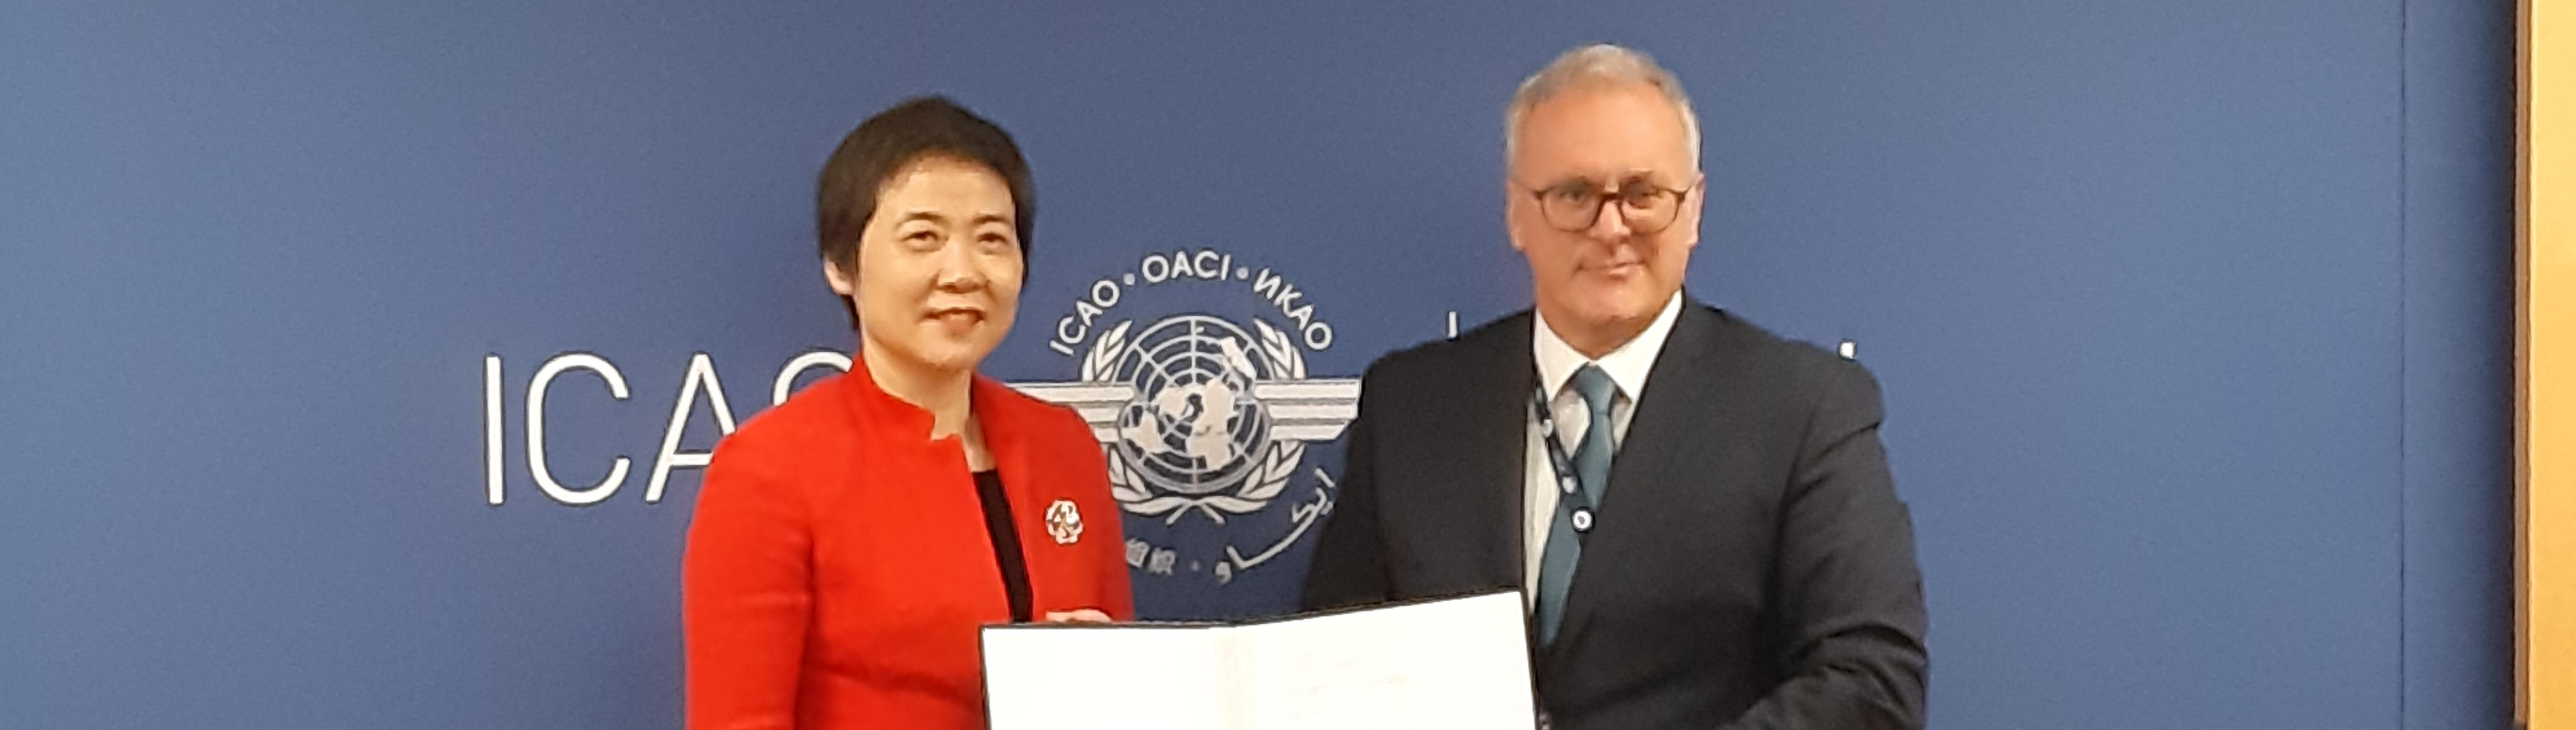 Il Presidente ENAC Nicola Zaccheo e il Segretario Generale ICAO Fang Liu dopo la  firma del Memorandum di Intesa